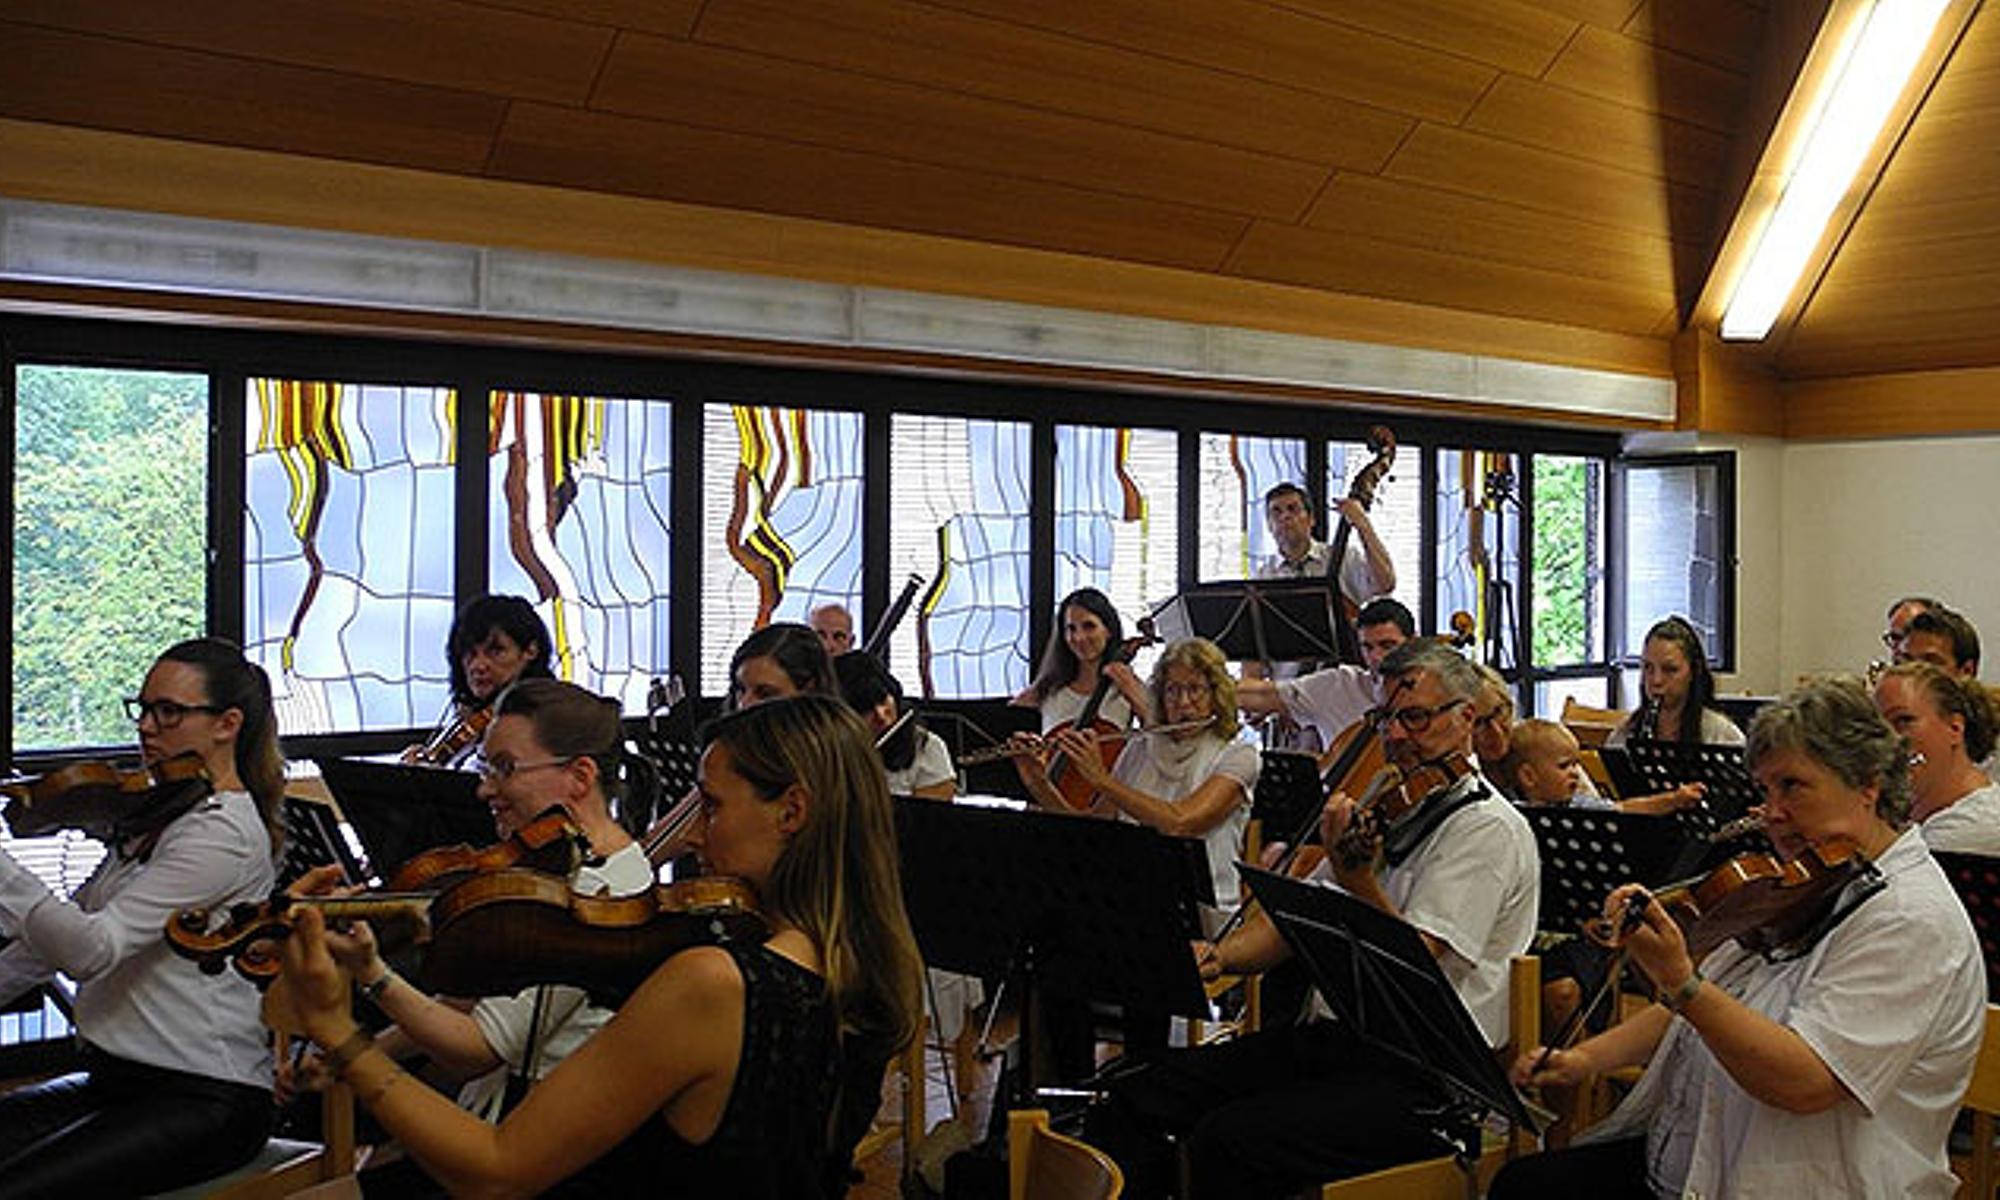 Das Orchester der Gemeinde umfasst etwa 15 Mitglieder.